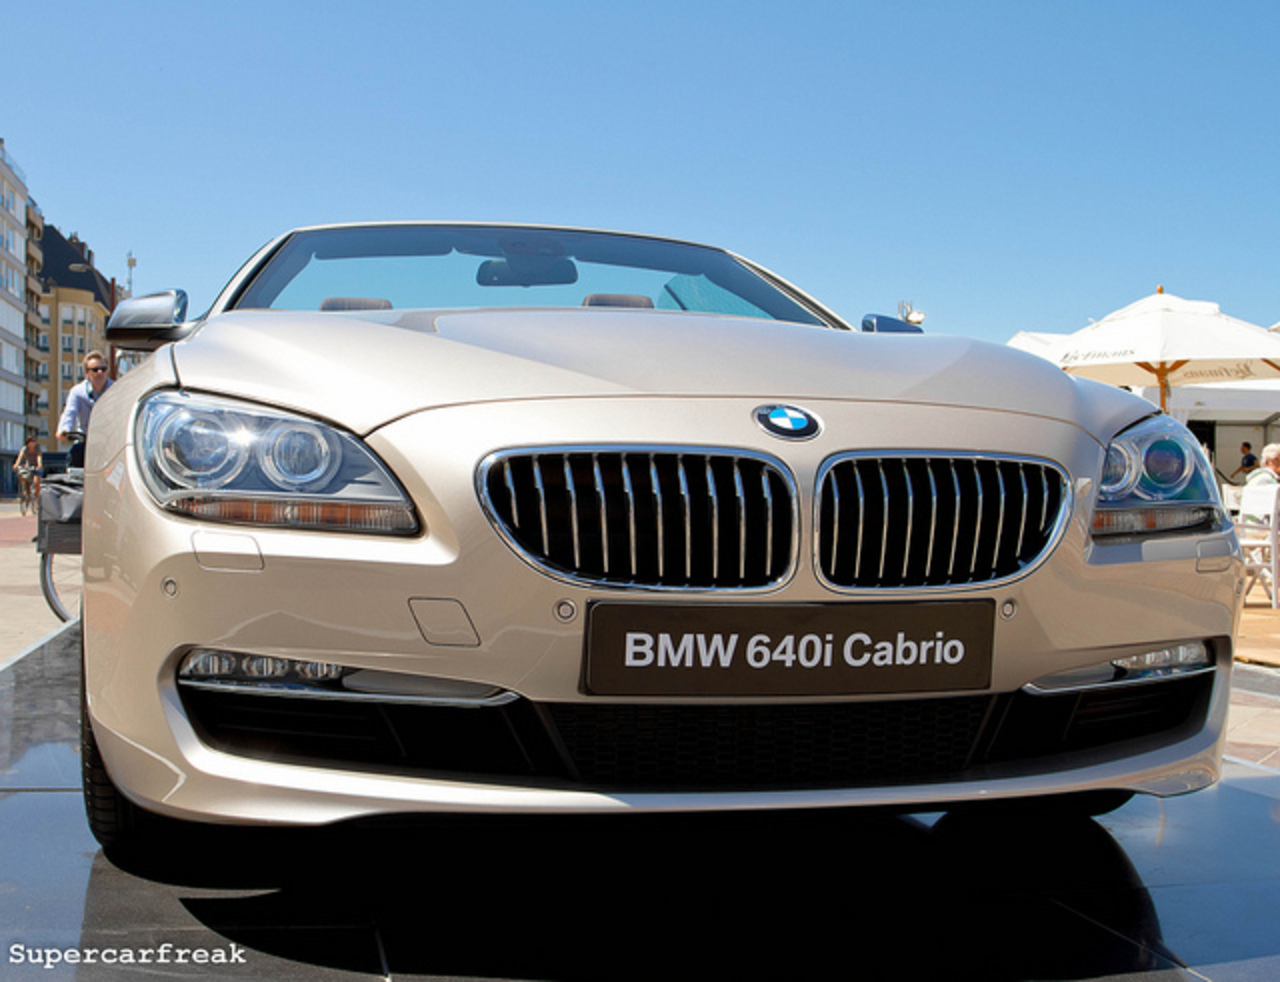 BMW 640i Cabriolet | Flickr - Photo Sharing!